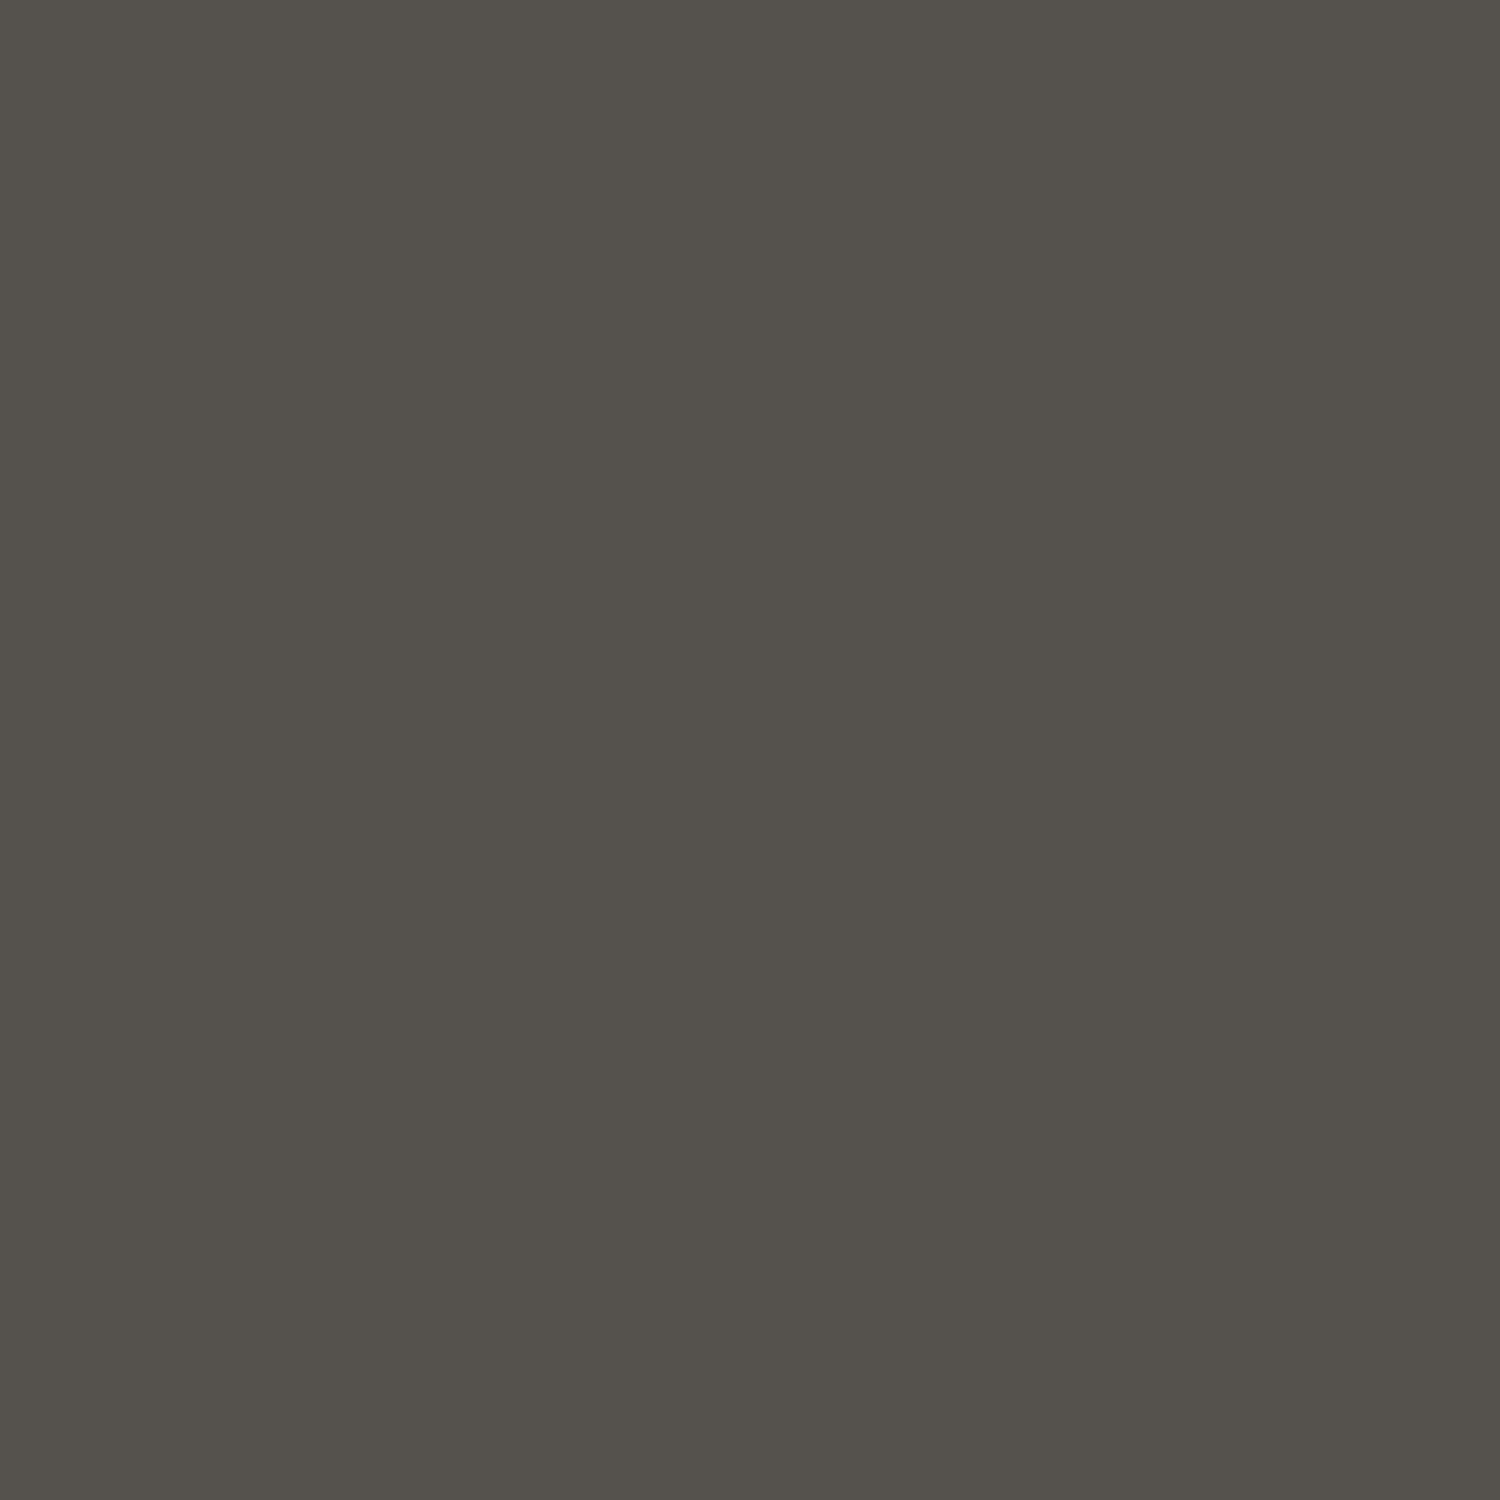 Buy WILSONART SLATE GREY D91-60 : 4' X 8' Online | Construction Finishes | Qetaat.com